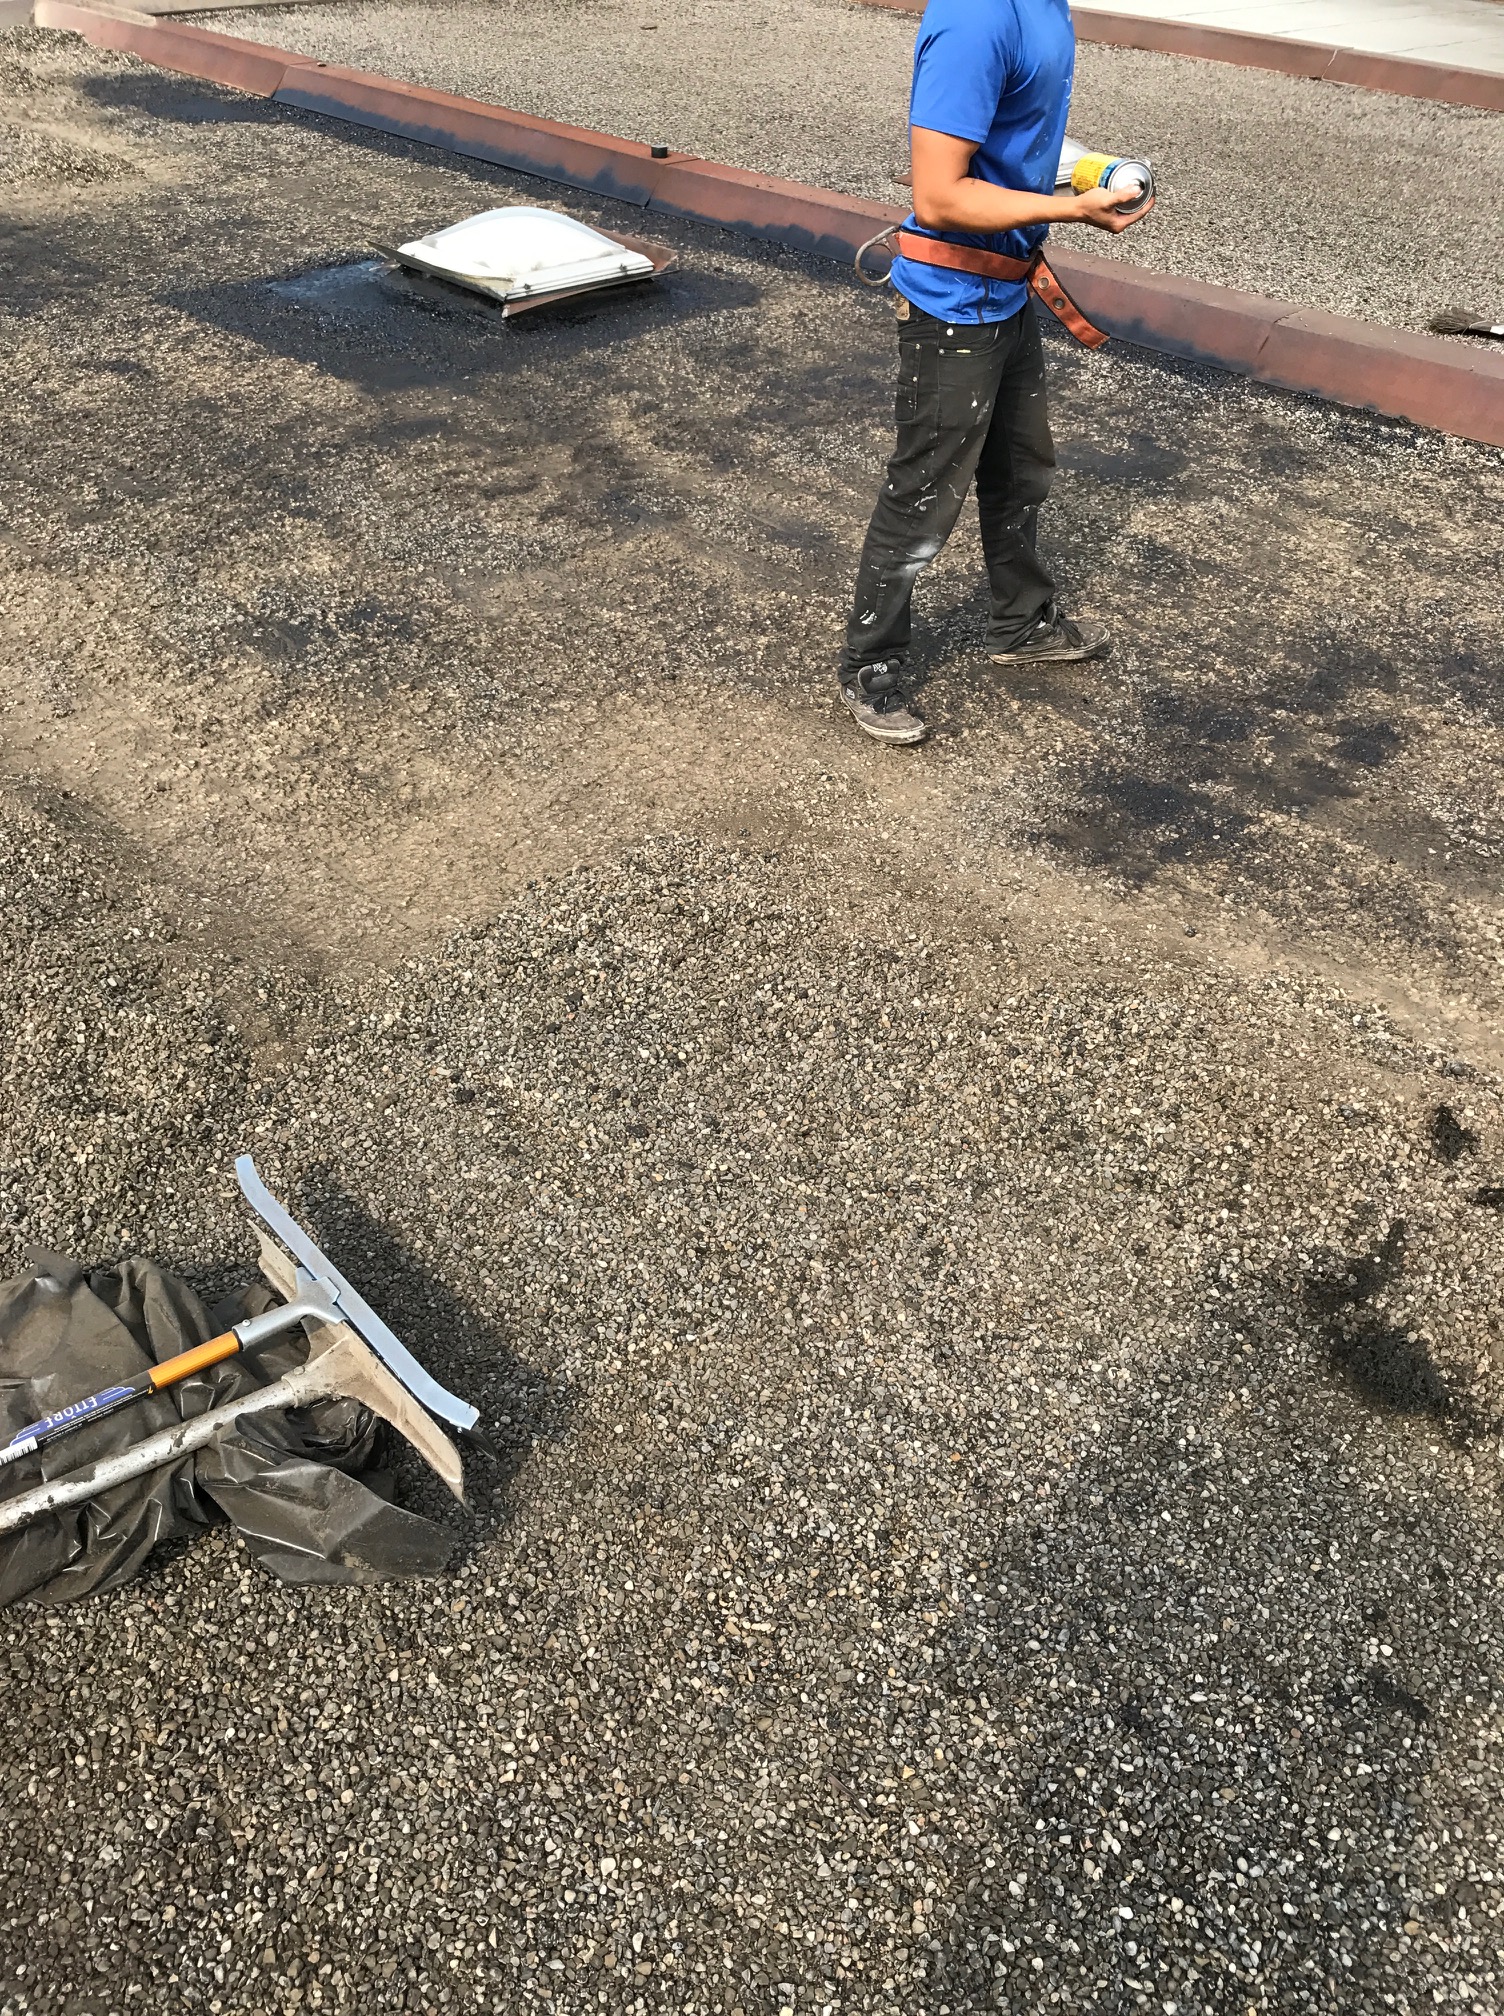 Tar and gravel roof repair Toronto | Roofing Repair Company ...